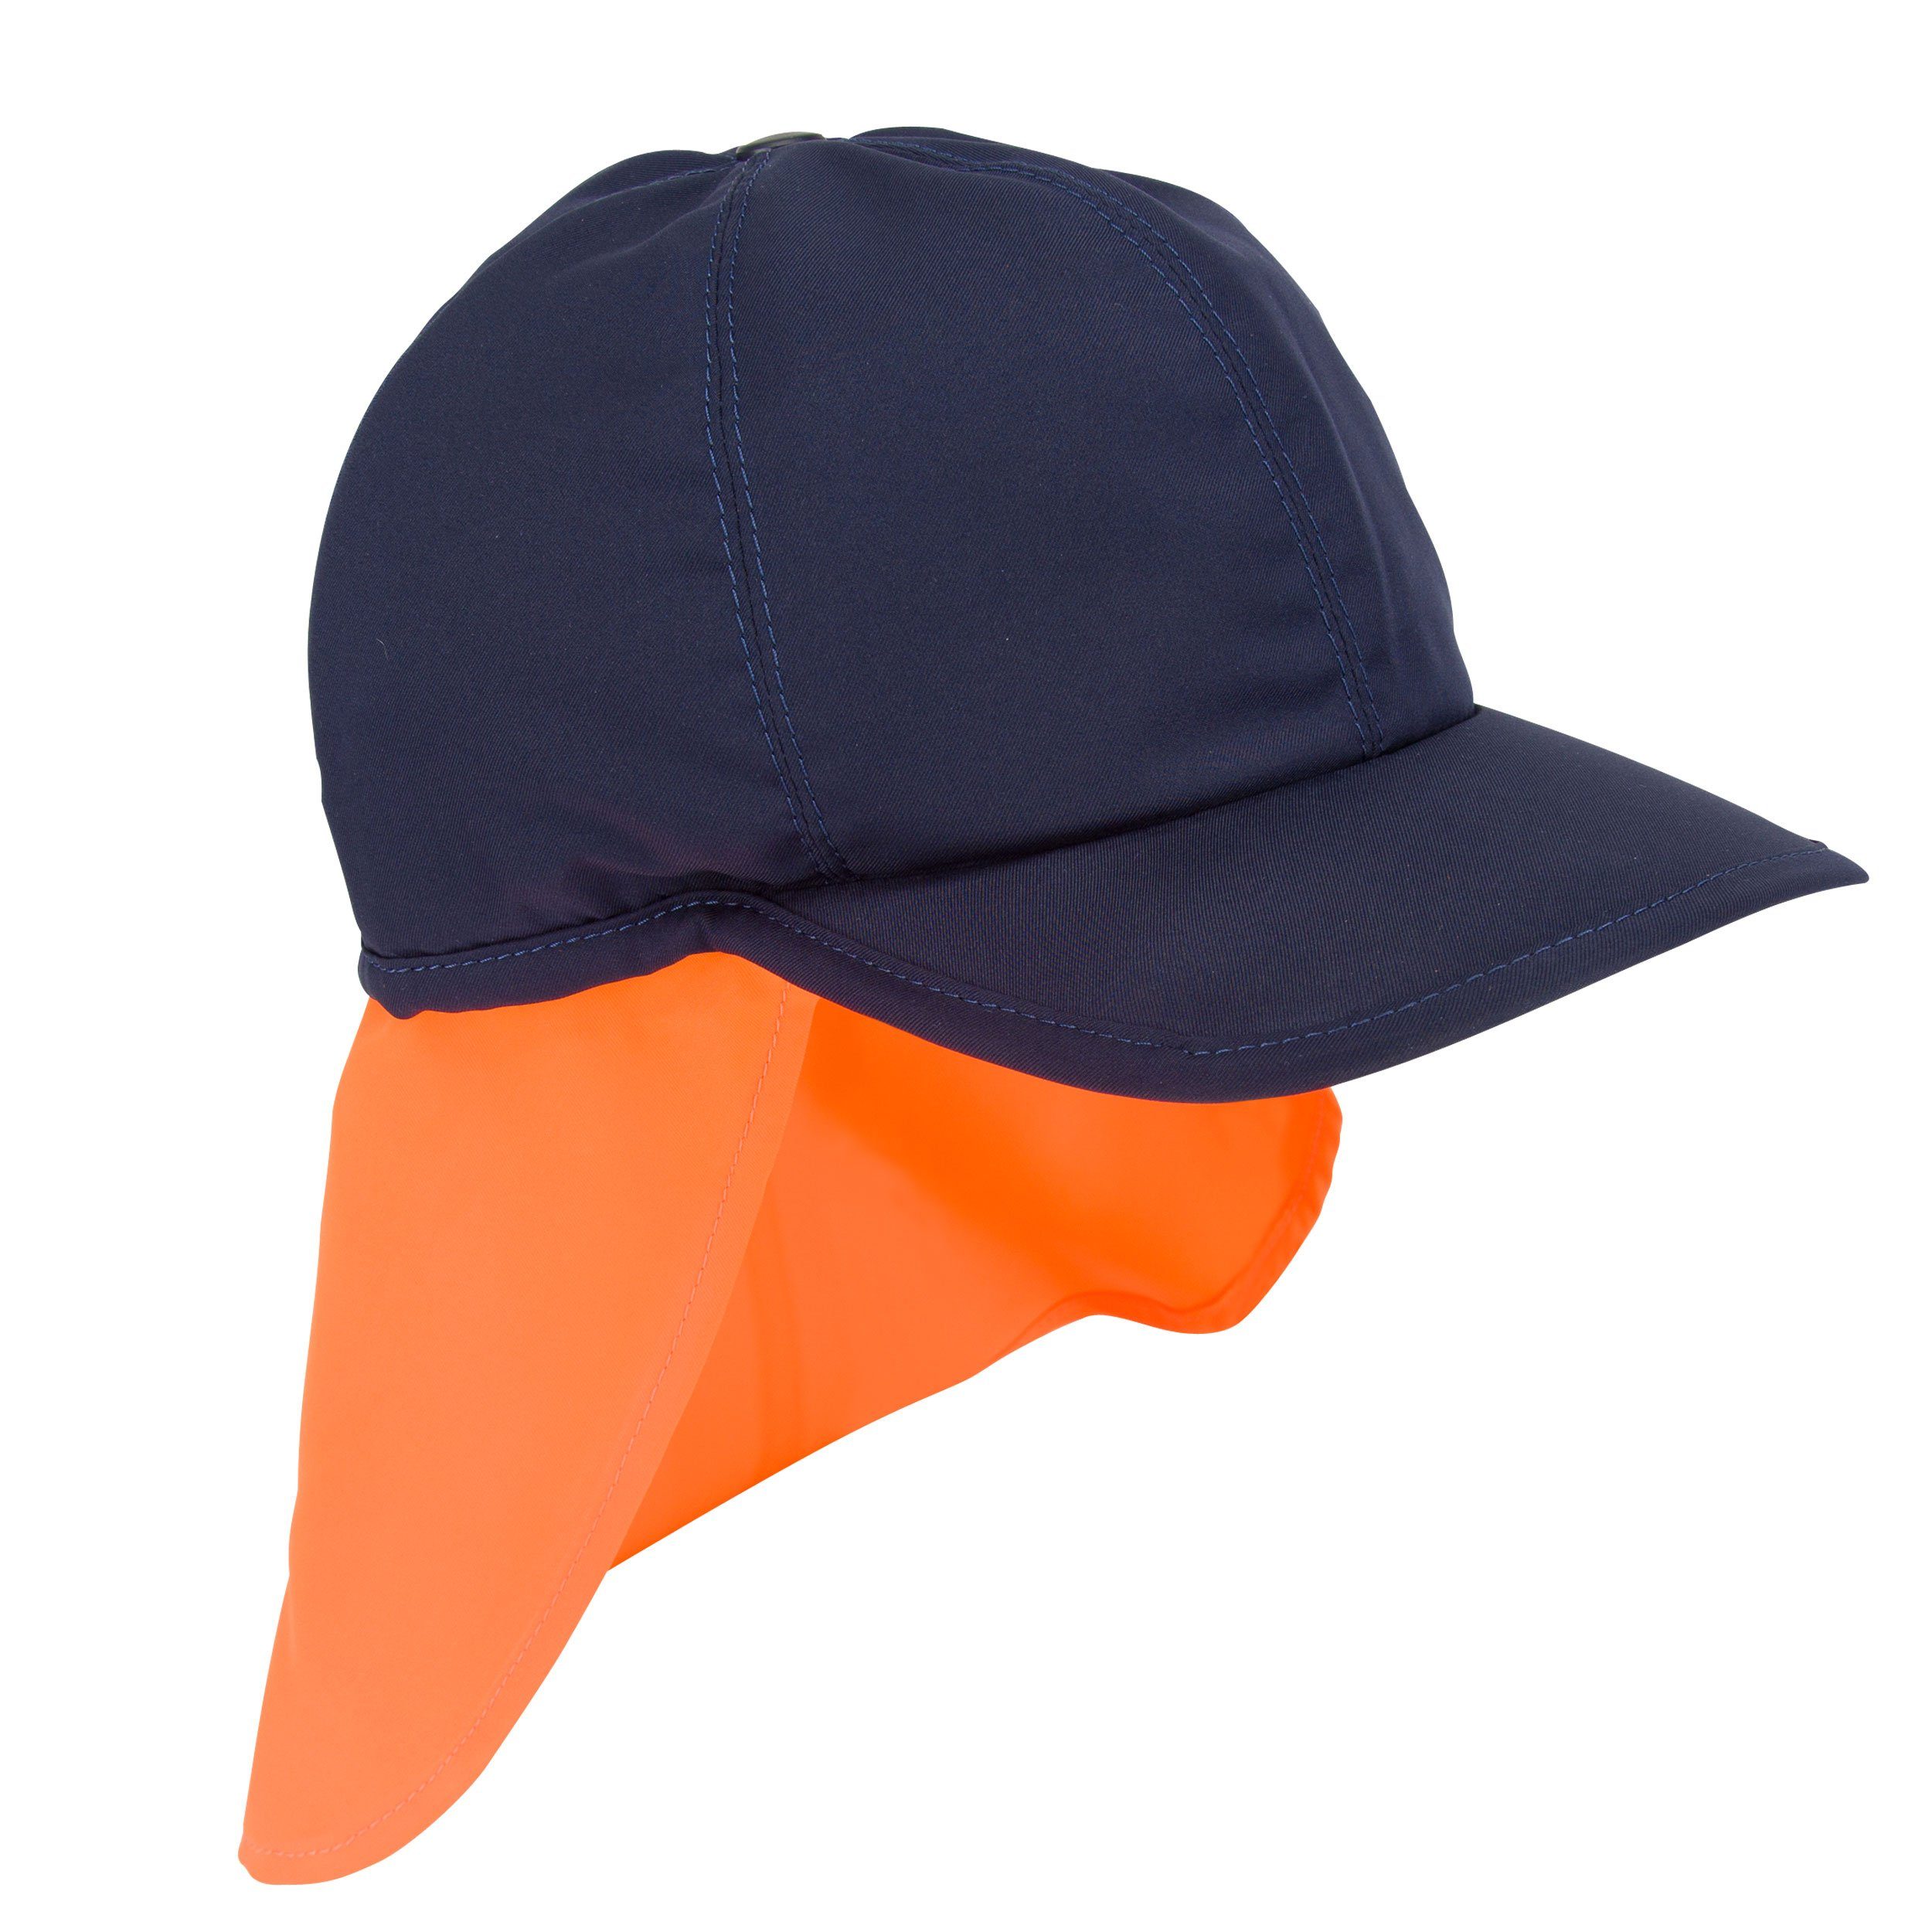 E.COOLINE Baseball Cap -kühlendes Cap mit Nackenschutz - Kühlung durch Aktivierung mit Wasser Klimaanlage zum Anziehen Blau/ Orange